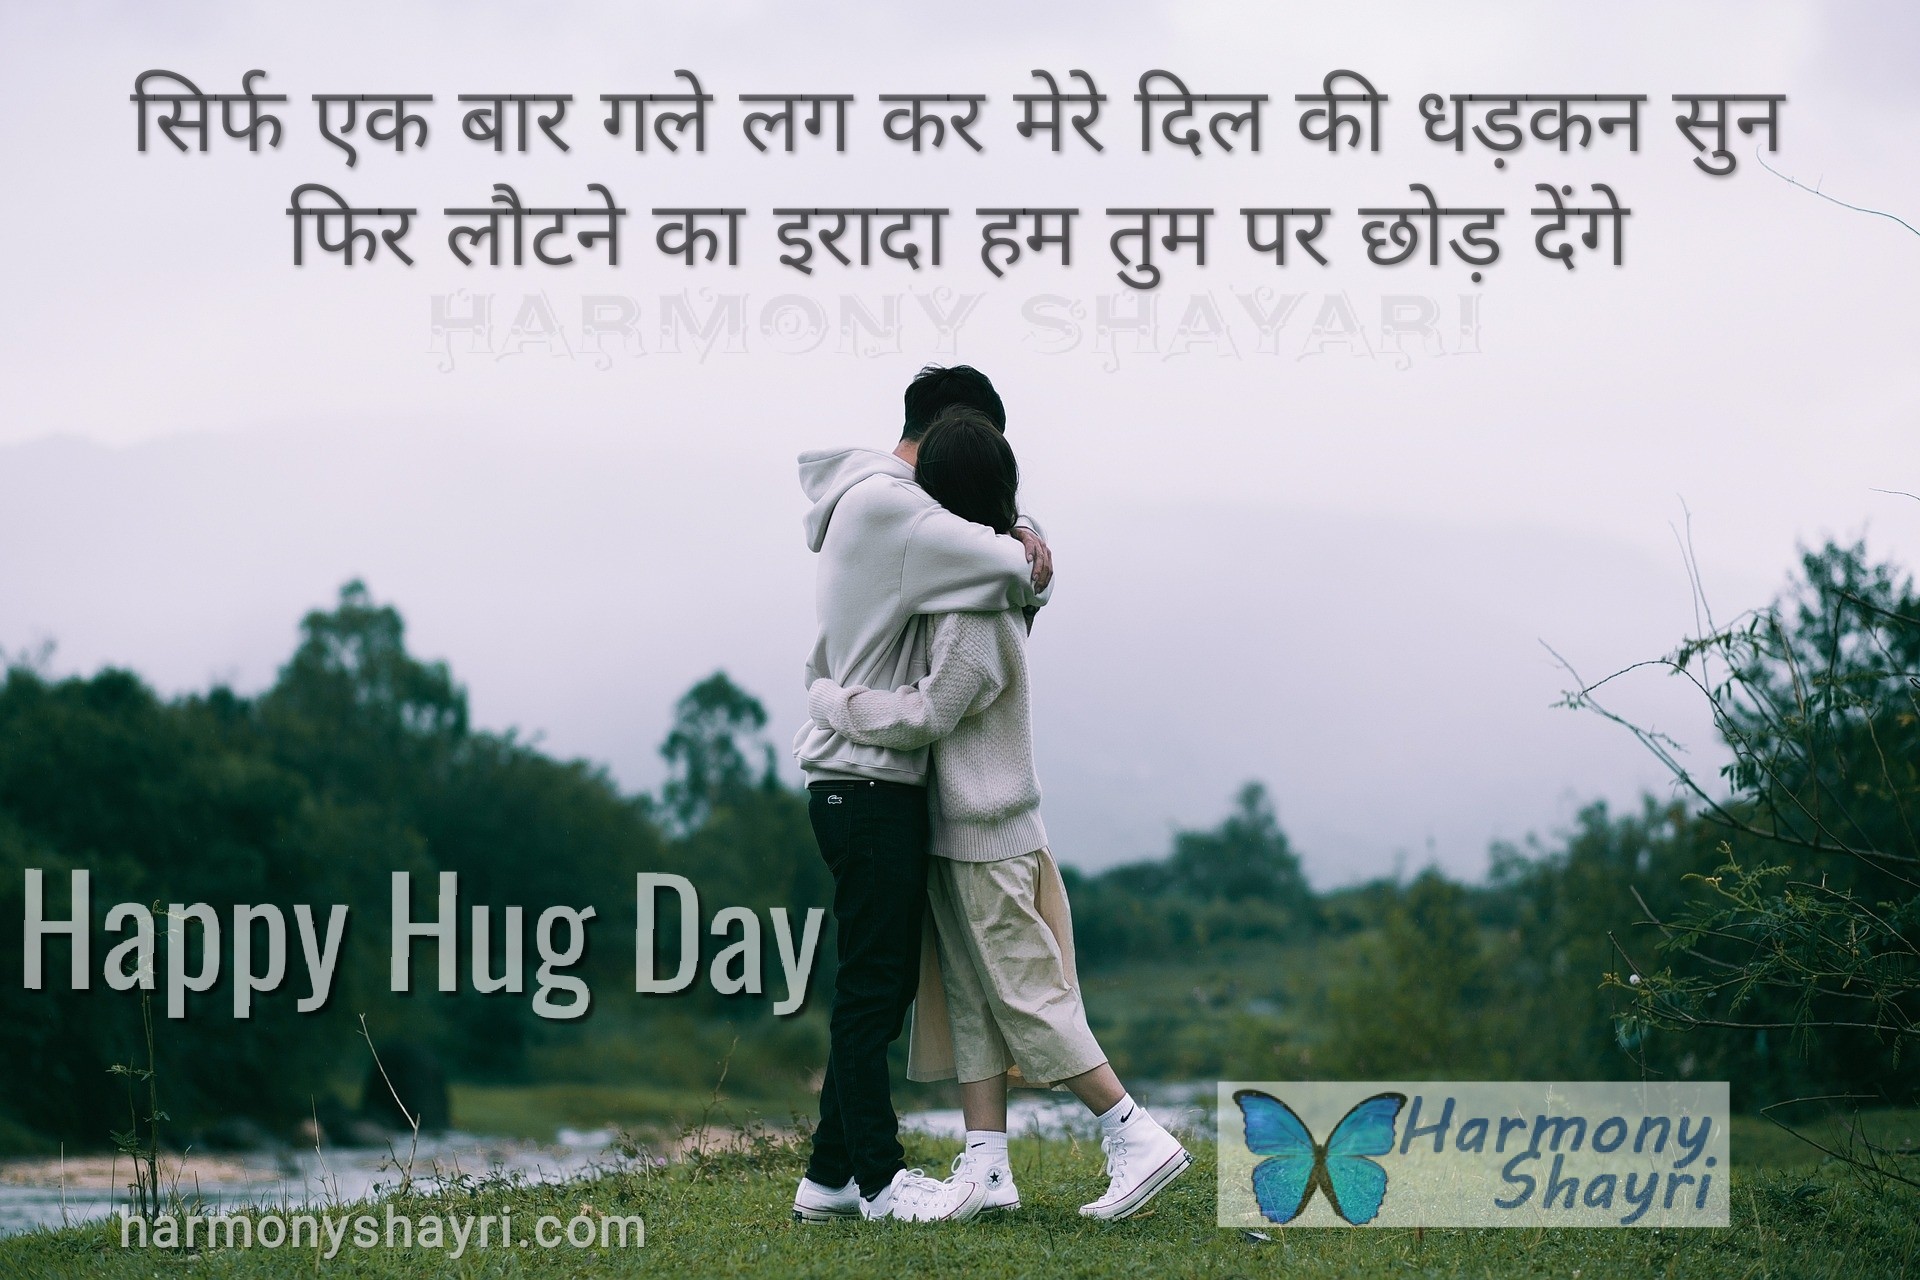 Sirf ek baar gale lag kar mere dil ki – Happy Hug Day